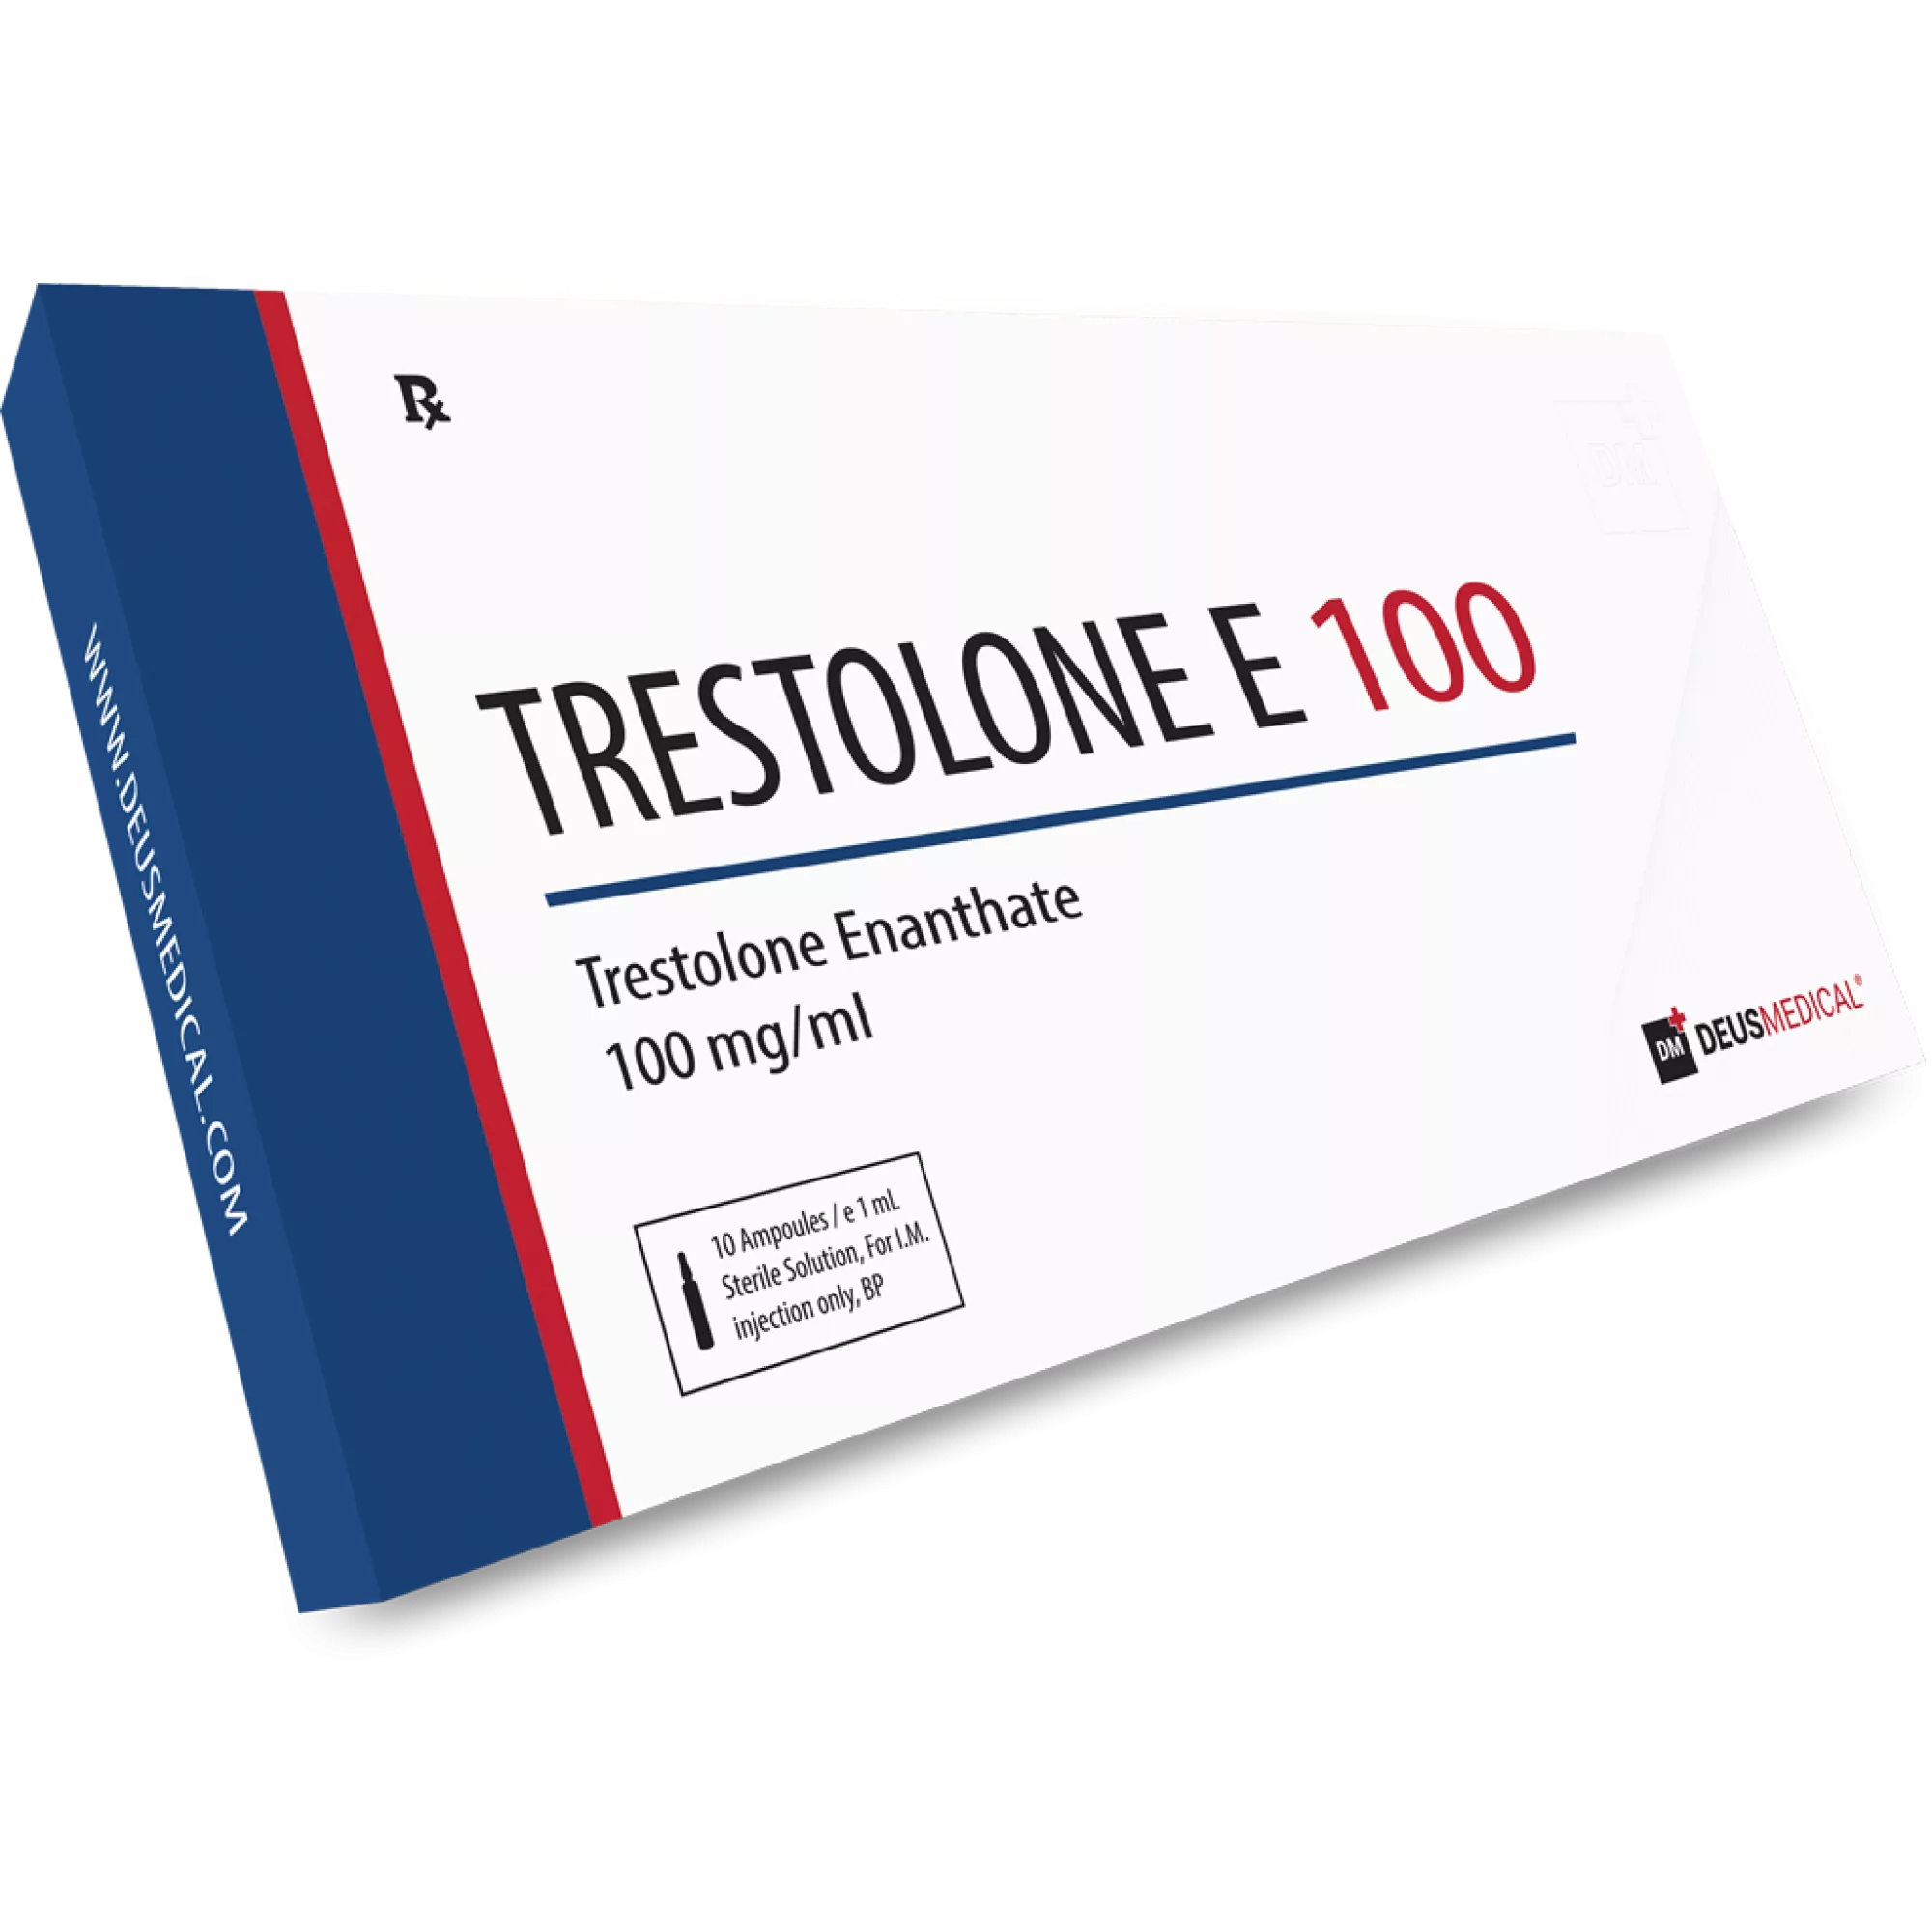 TRESTOLONE E 100 (Trestolone Enanthate), Deus Medical, Köp steroider online - www.deuspower.shop